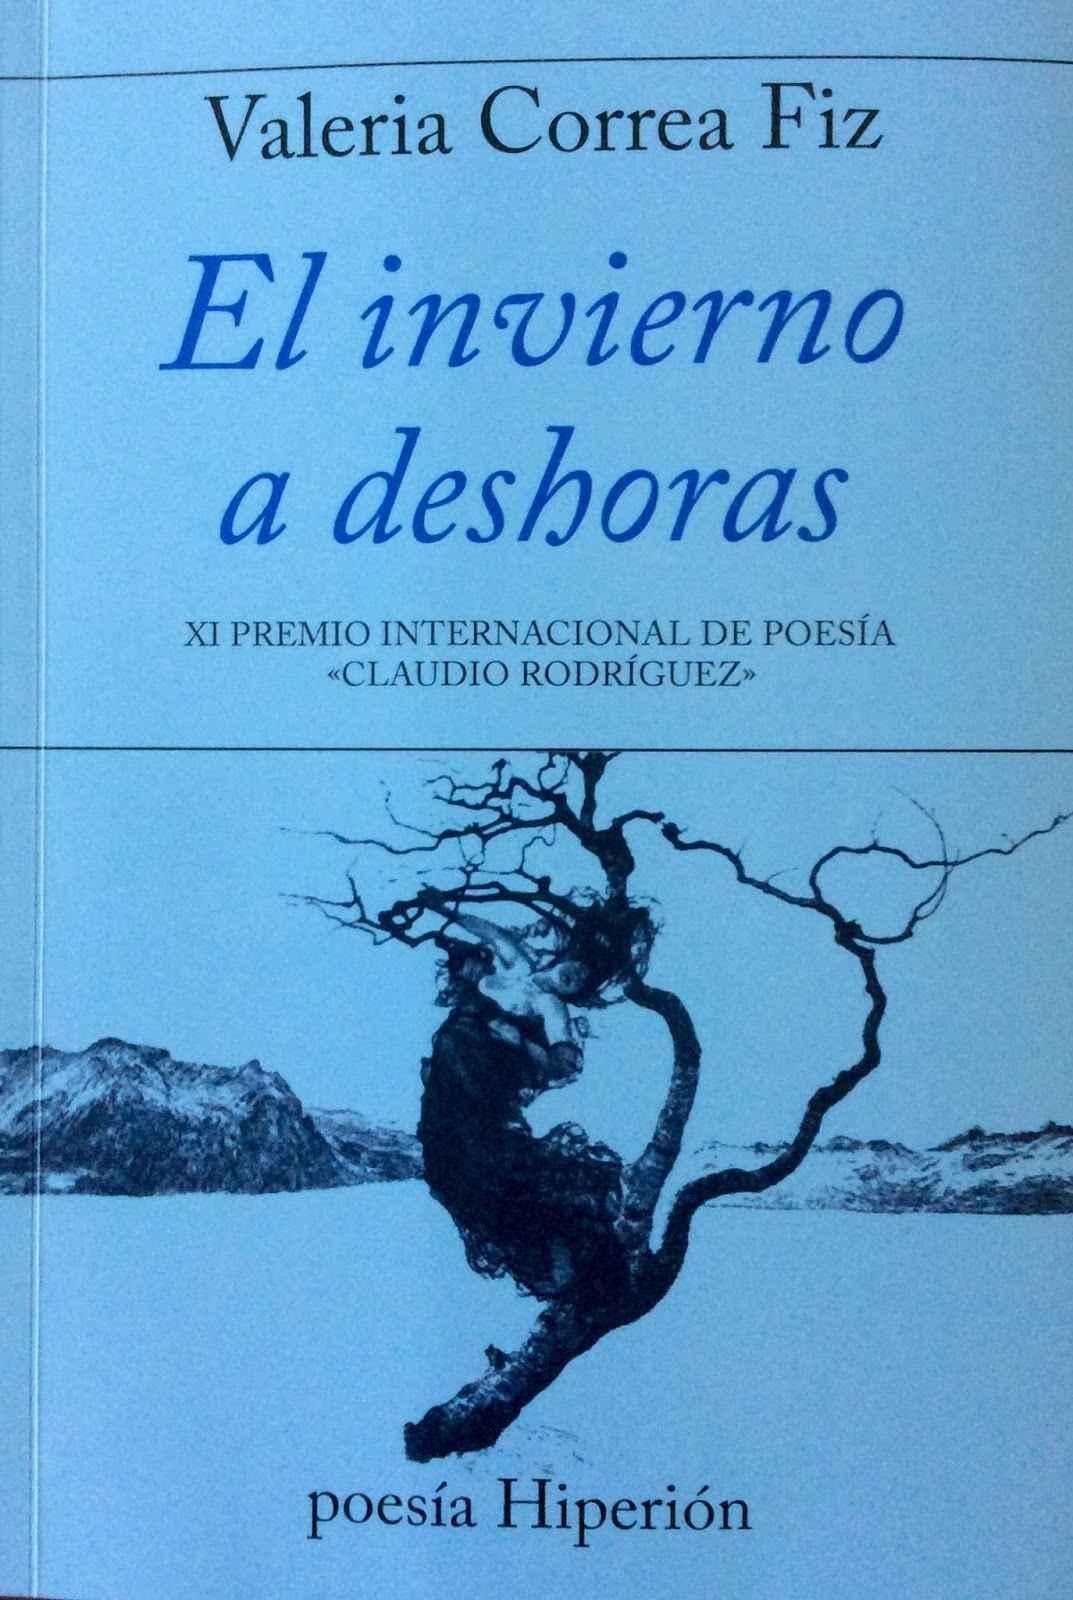 Invierno a Deshoras "XI Premio Internacional de Poesía "Claudio Rodriguez""